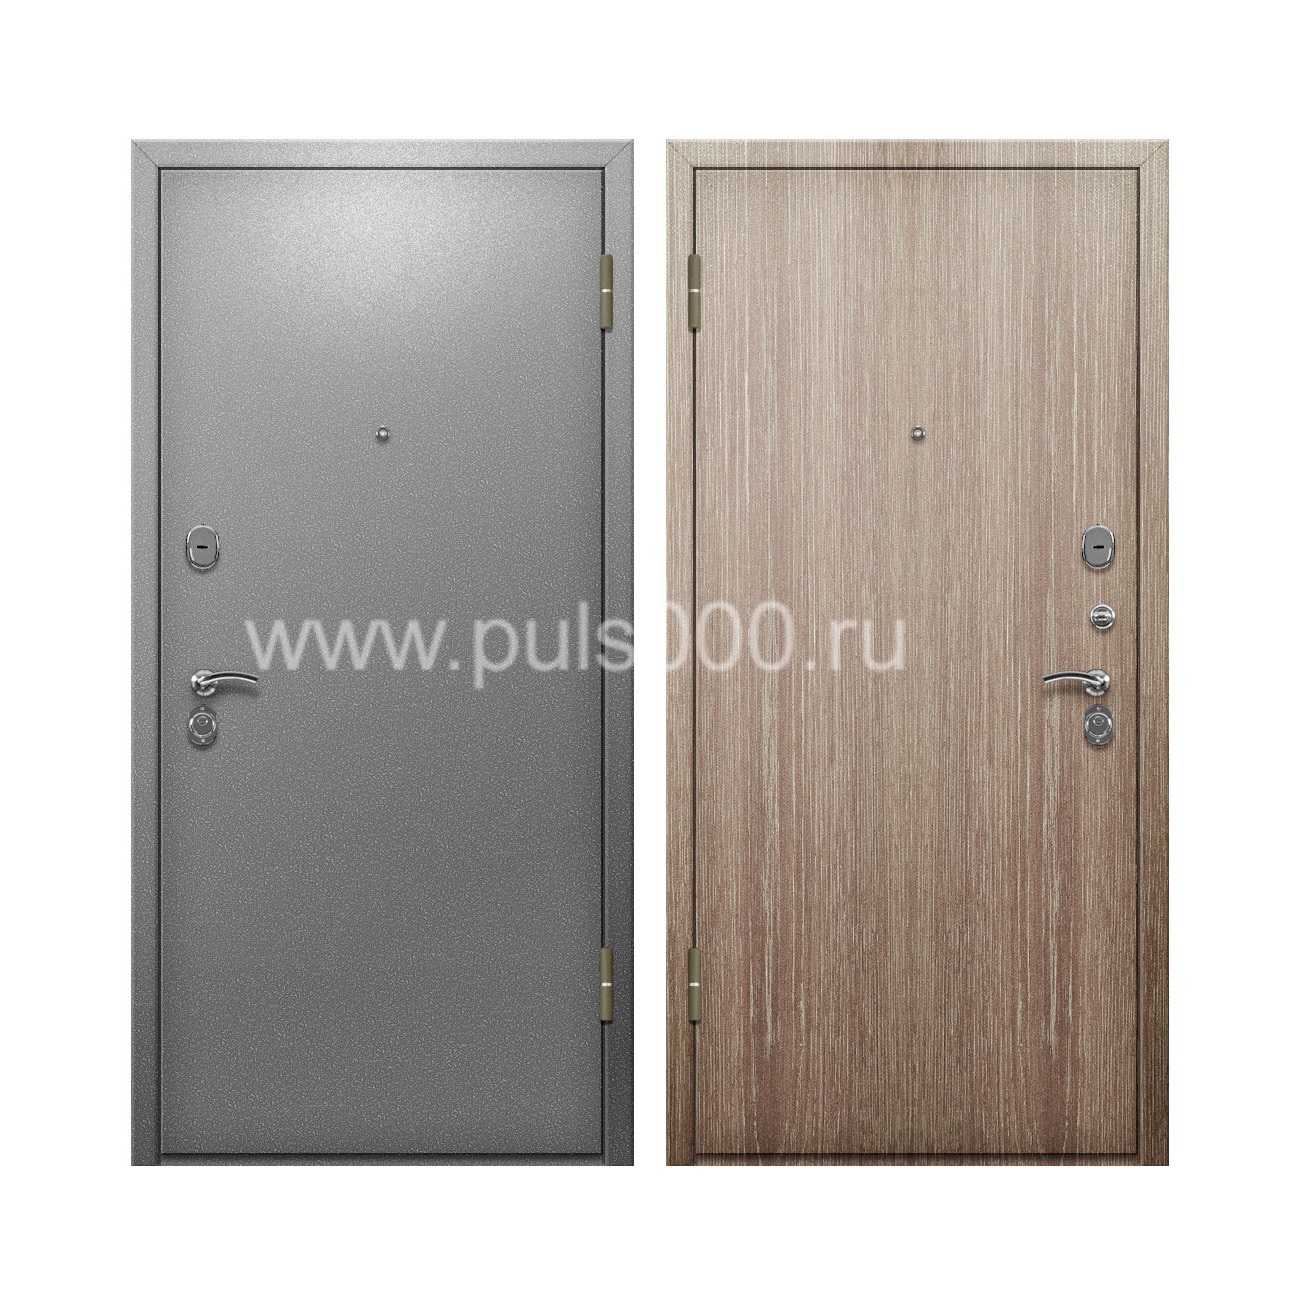 Входная дверь с порошковым окрасом и ламинатом PR-77, цена 20 000  руб.